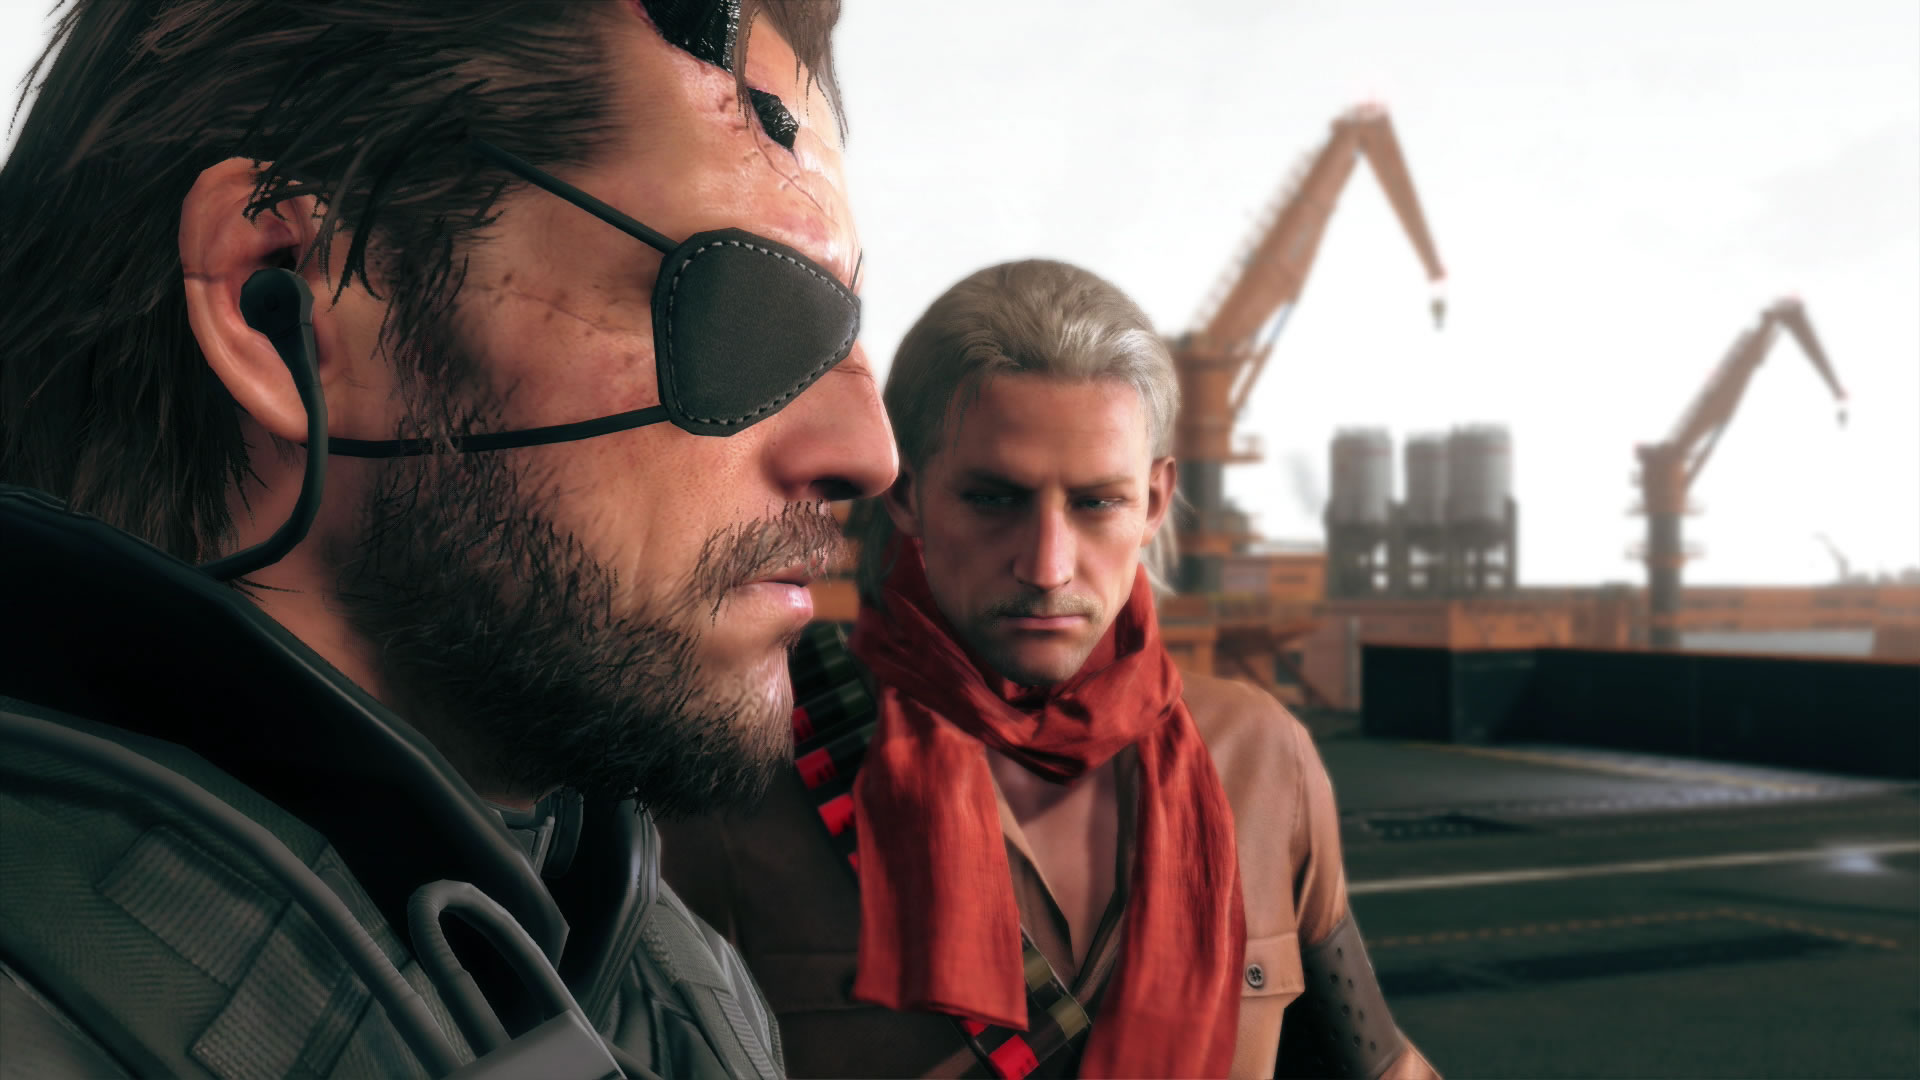 Notre preview de Metal Gear Solid V : The Phantom Pain sans l'ombre d'un spoiler